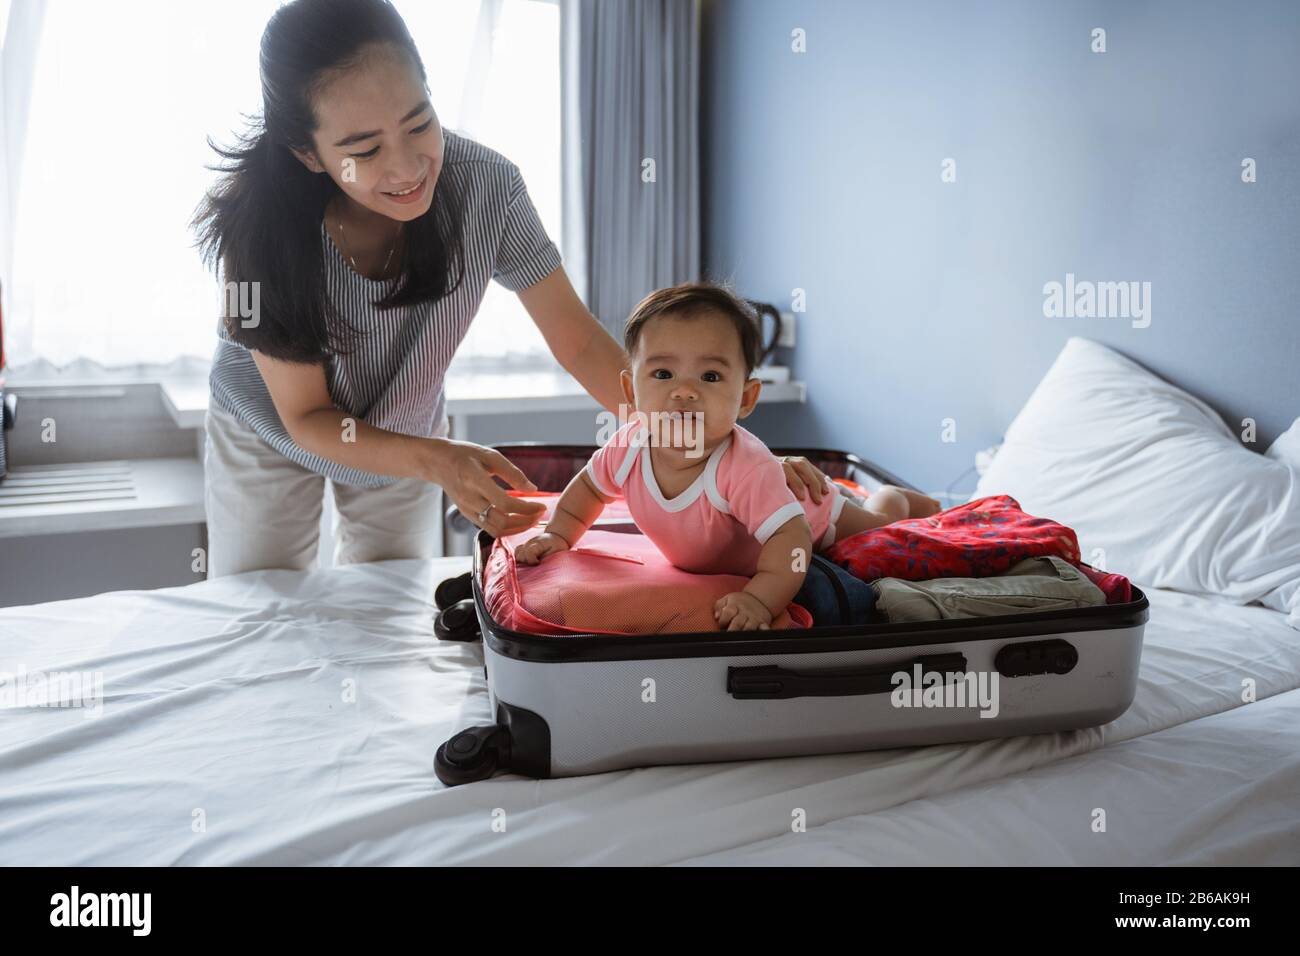 Mama lächelt, als sie ein niedliches Baby in einem offenen Koffer mit  Kleidung auf dem Bett liegen hält Stockfotografie - Alamy